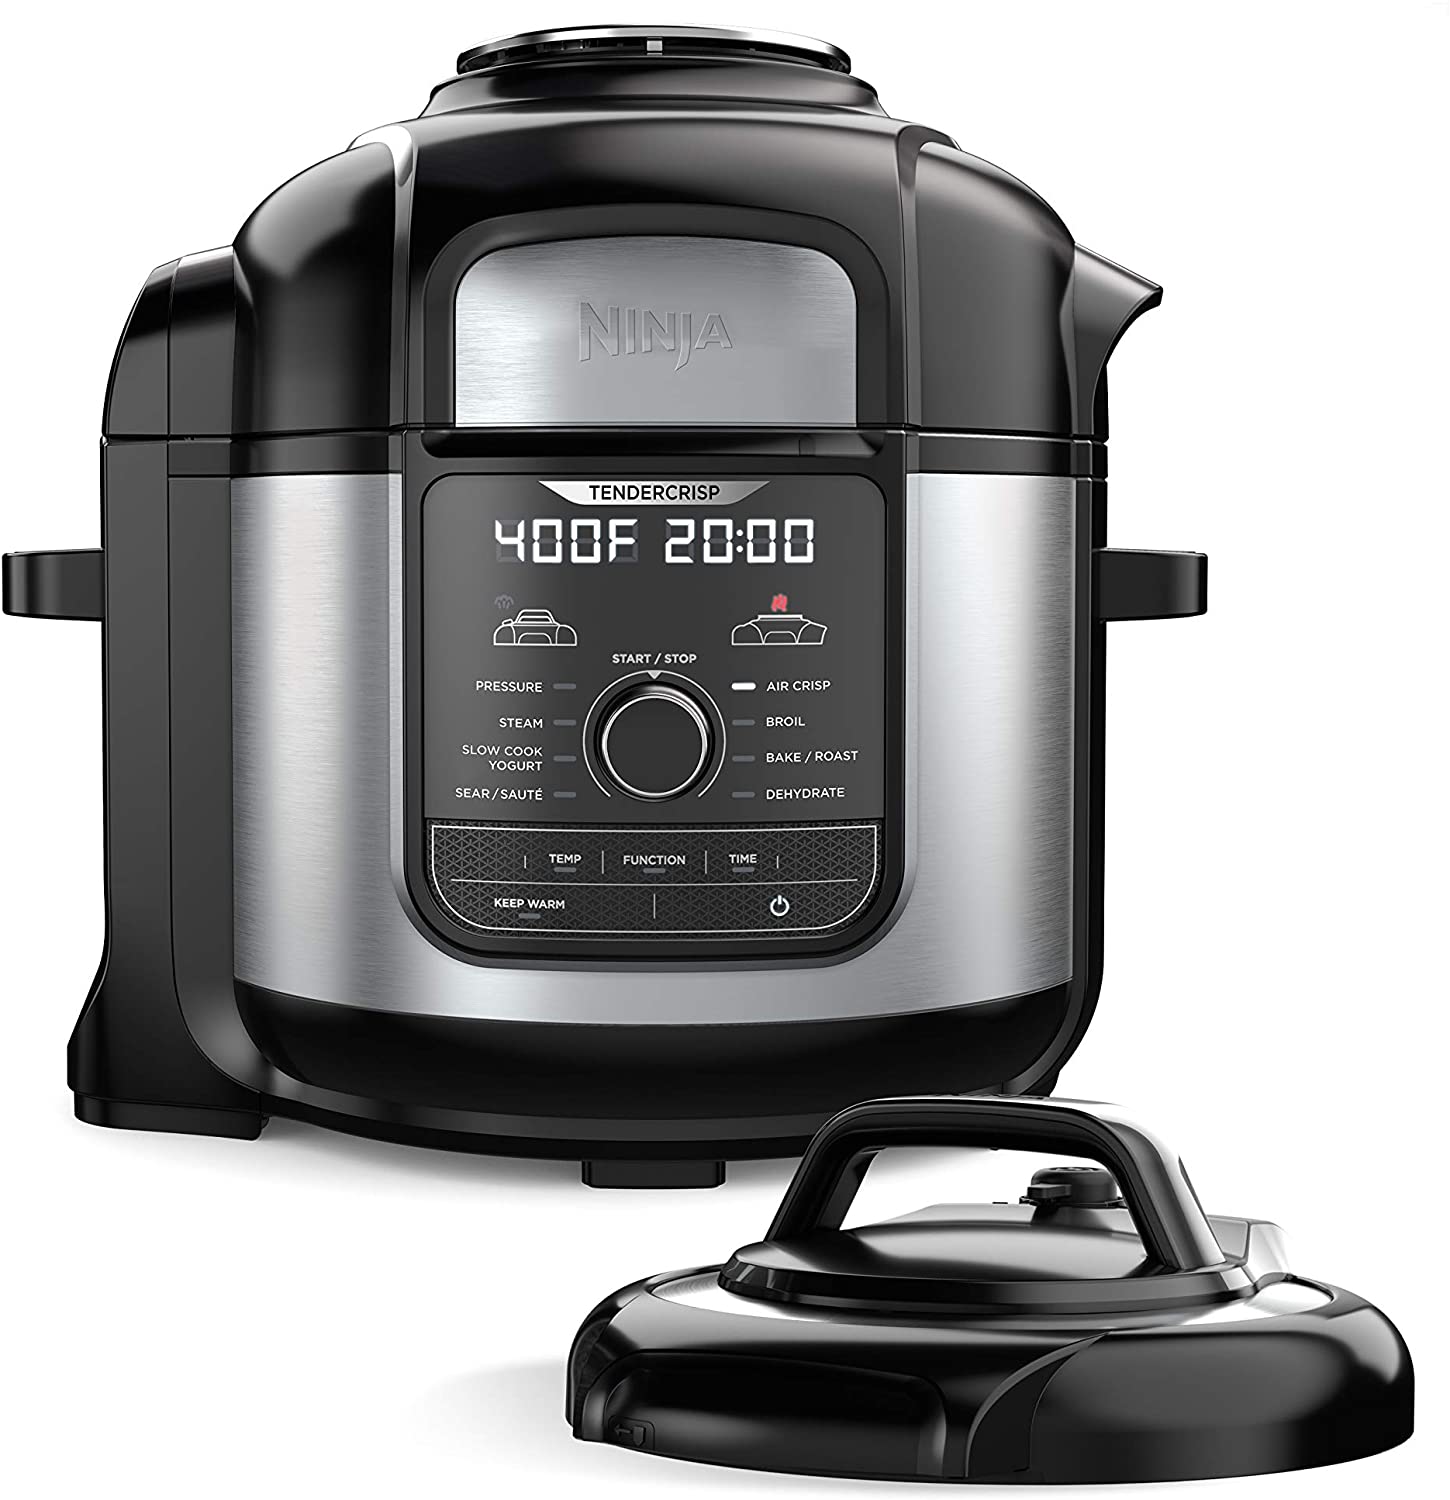 https://www.dontwasteyourmoney.com/wp-content/uploads/2020/08/ninja-foodi-9-in-1-pressure-cooker-8-quart-pressure-cookers.jpg